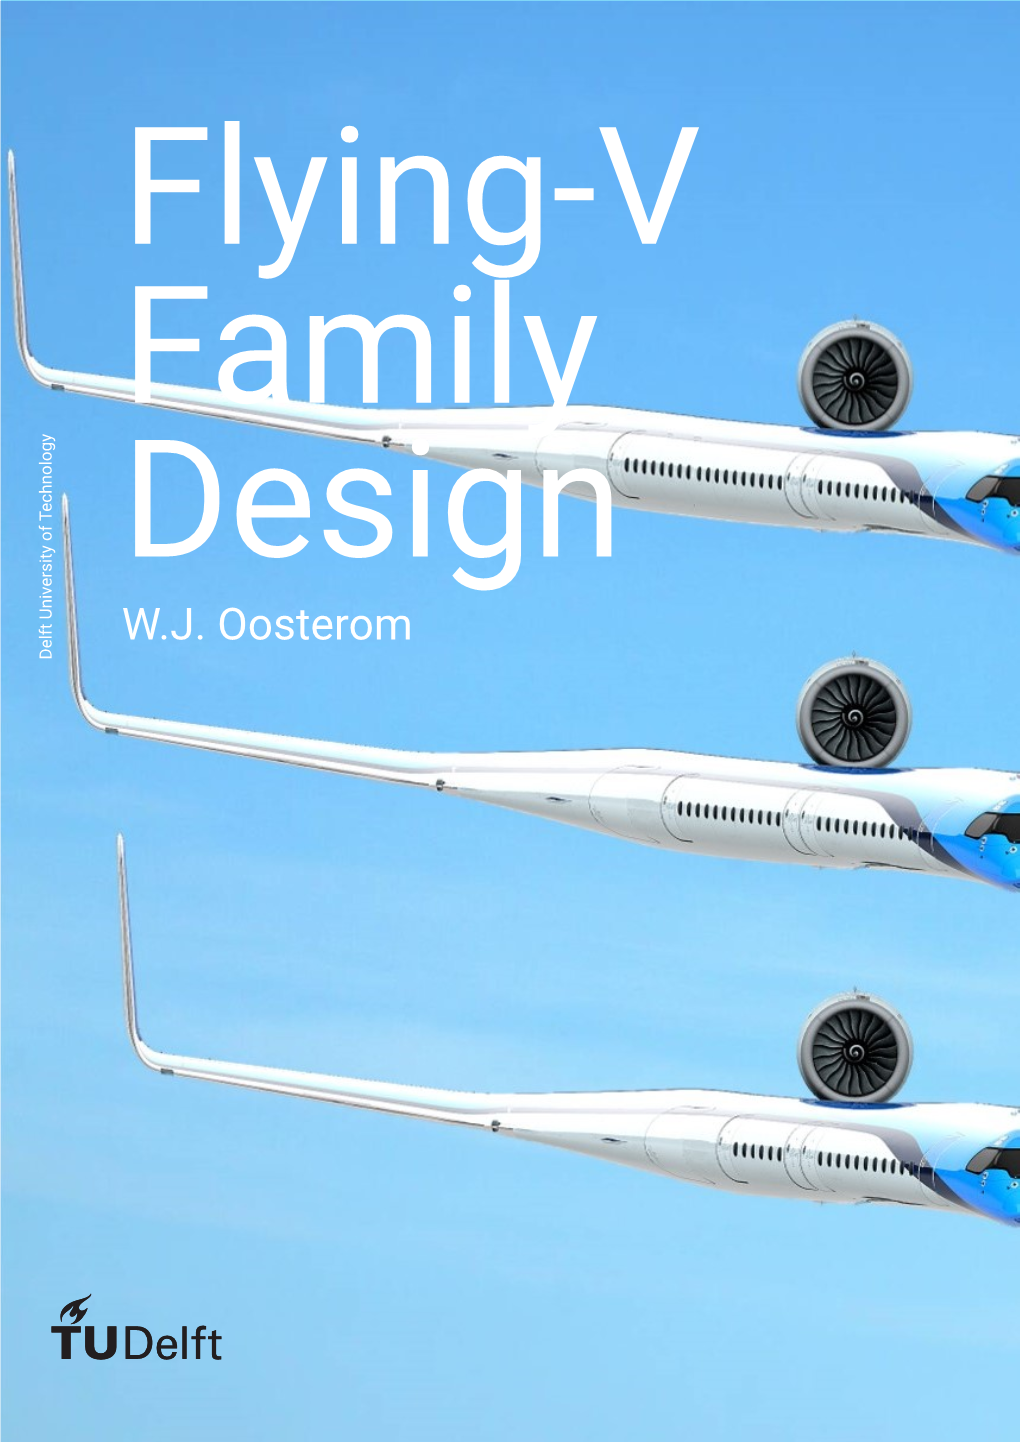 Flying-V Family Design W.J